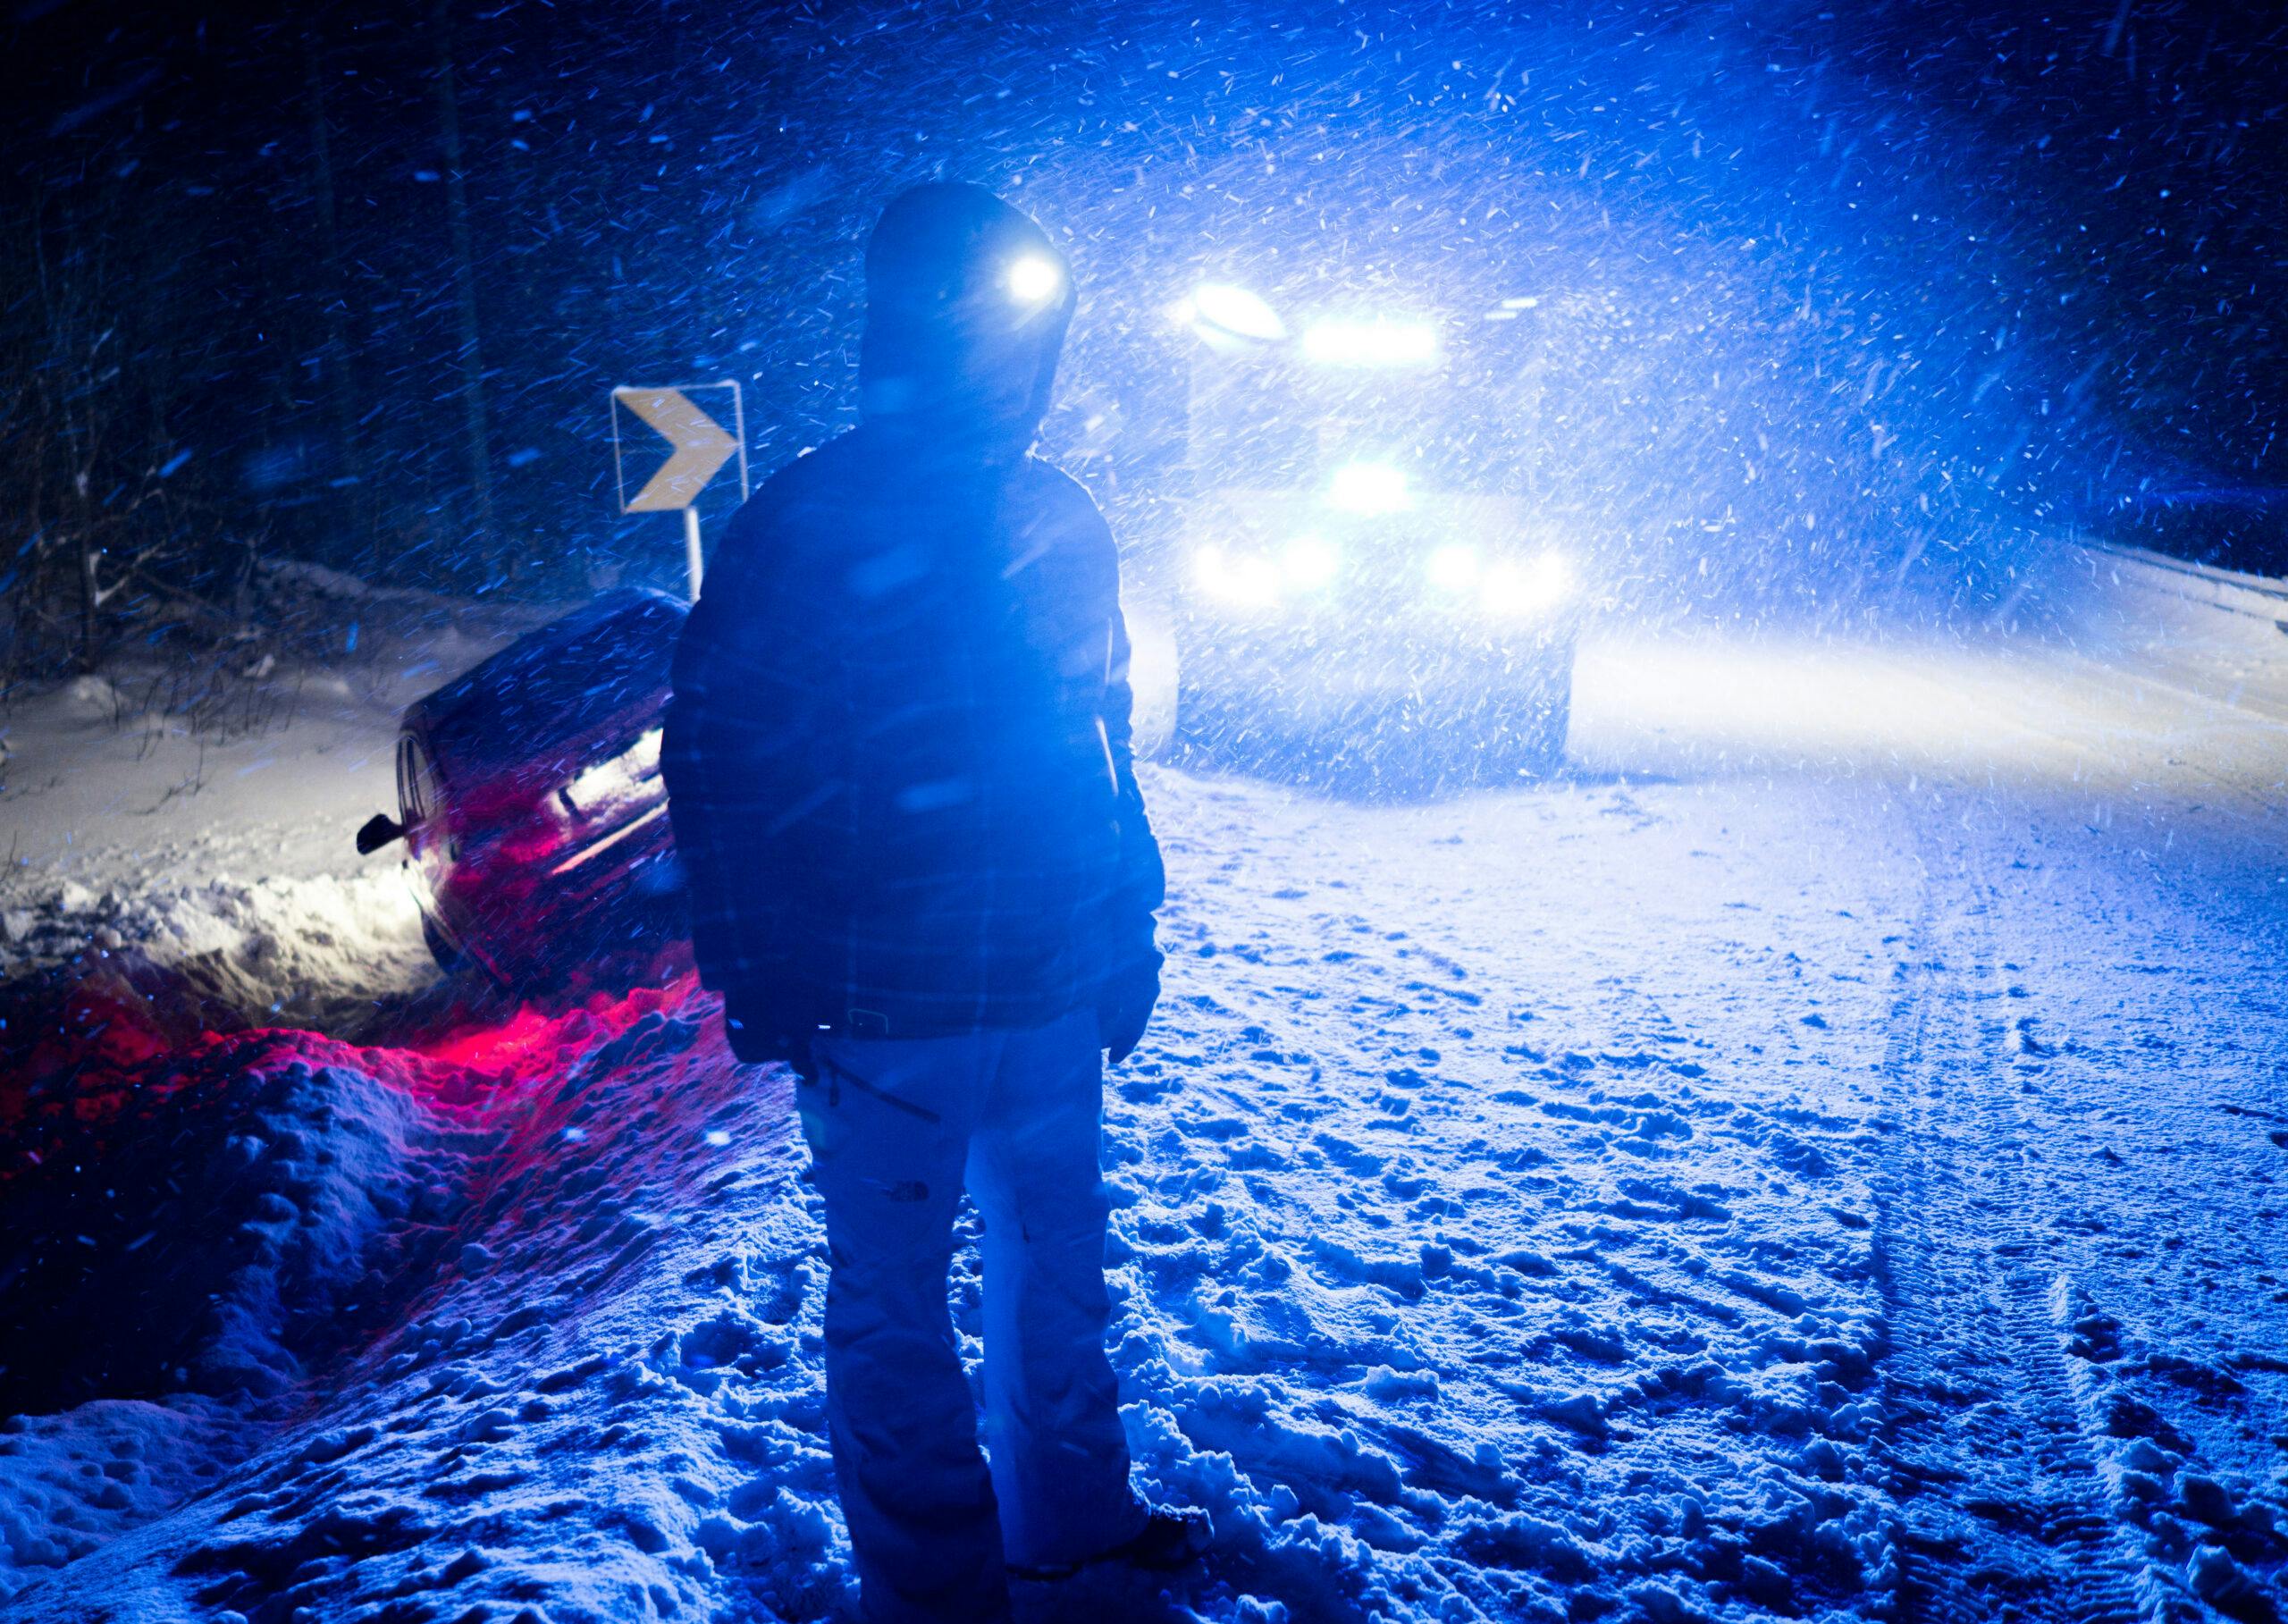 Ambulance vehicle on winter night road